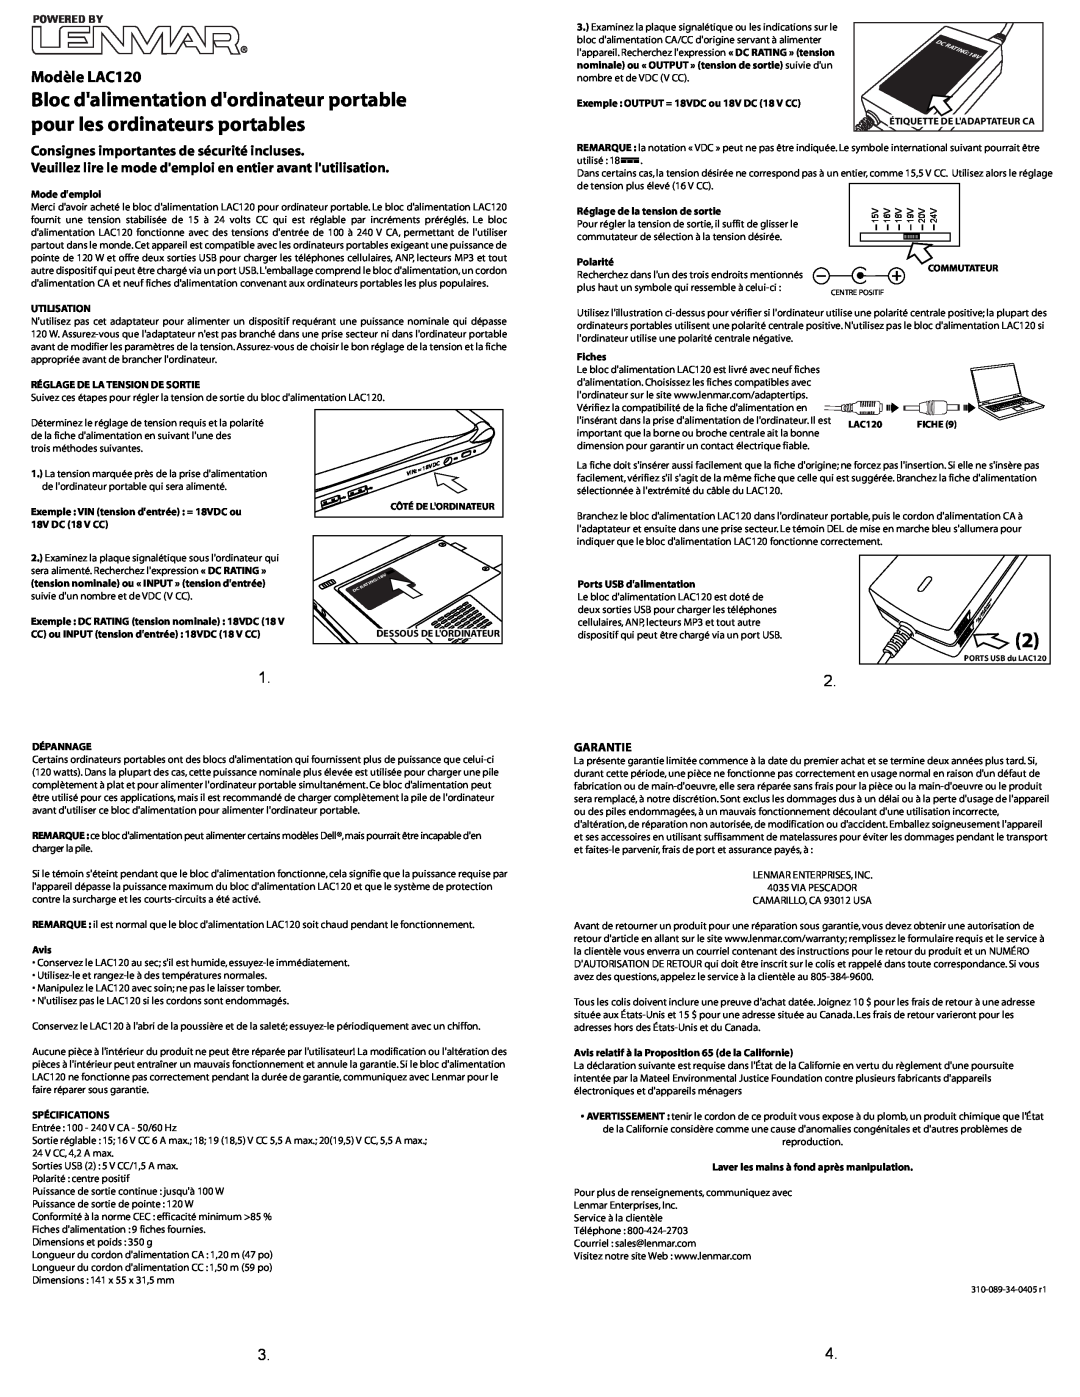 Lenmar Enterprises important safety instructions Modèle LAC120, Consignes importantes de sécurité incluses, Powered By 